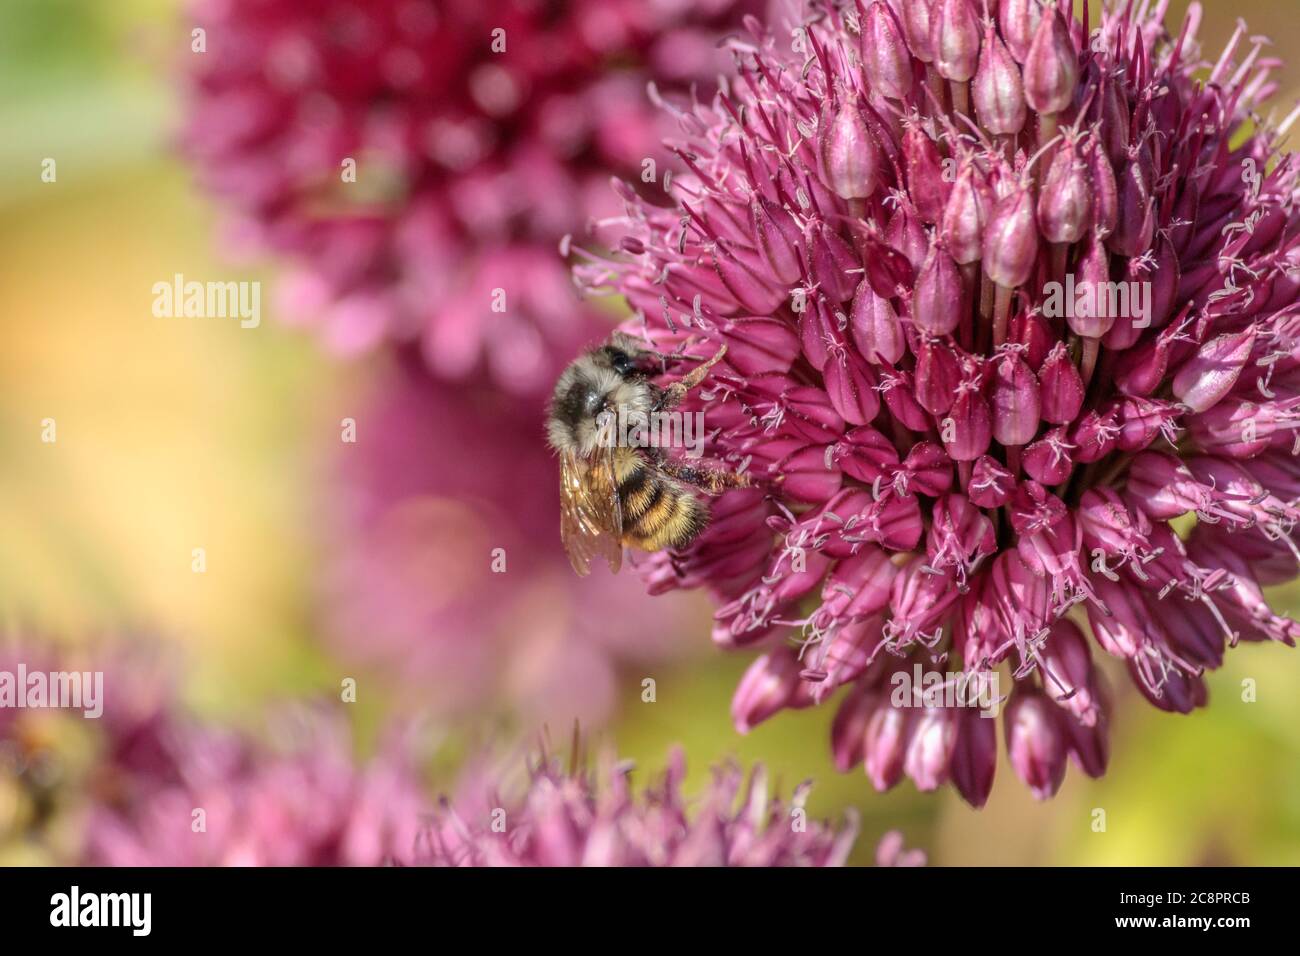 Eine Ansicht auf Augenhöhe, von der Seite, einer Honigbiene mit Pollen auf den Beinen, die Nektar aus leuchtend violetten Allium sphaerocephalon Blüten sammelt. Stockfoto